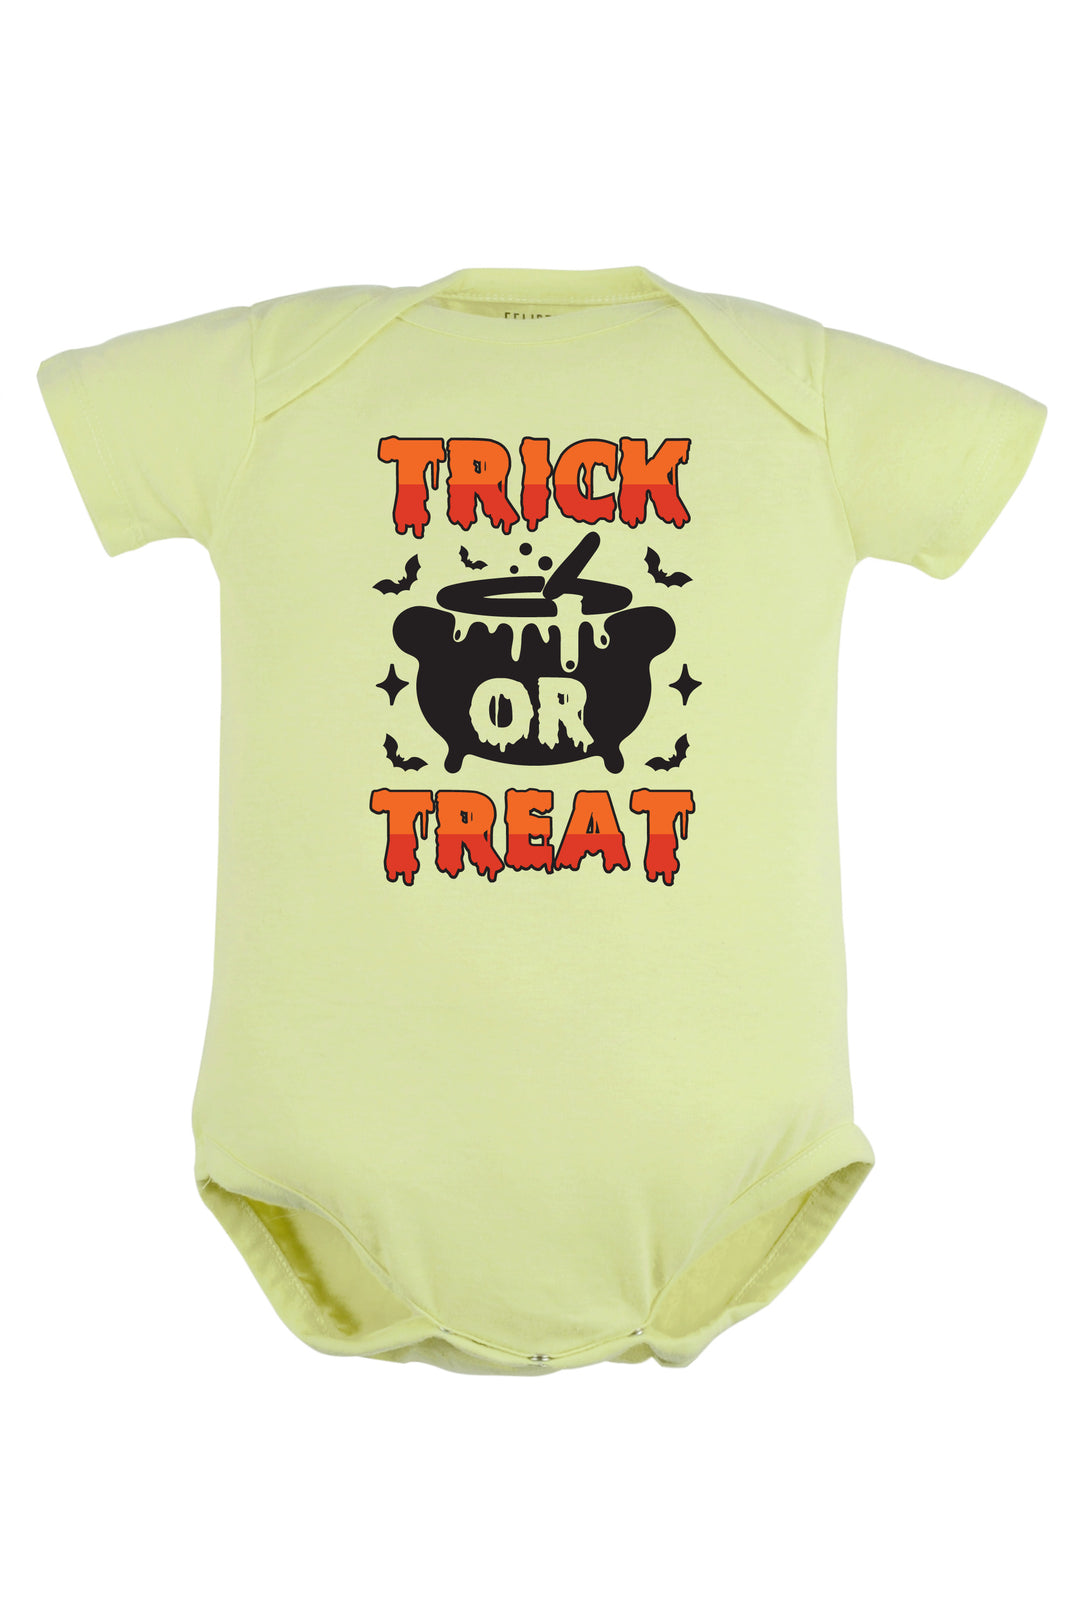 Trick Or Treat Baby Romper | Onesies